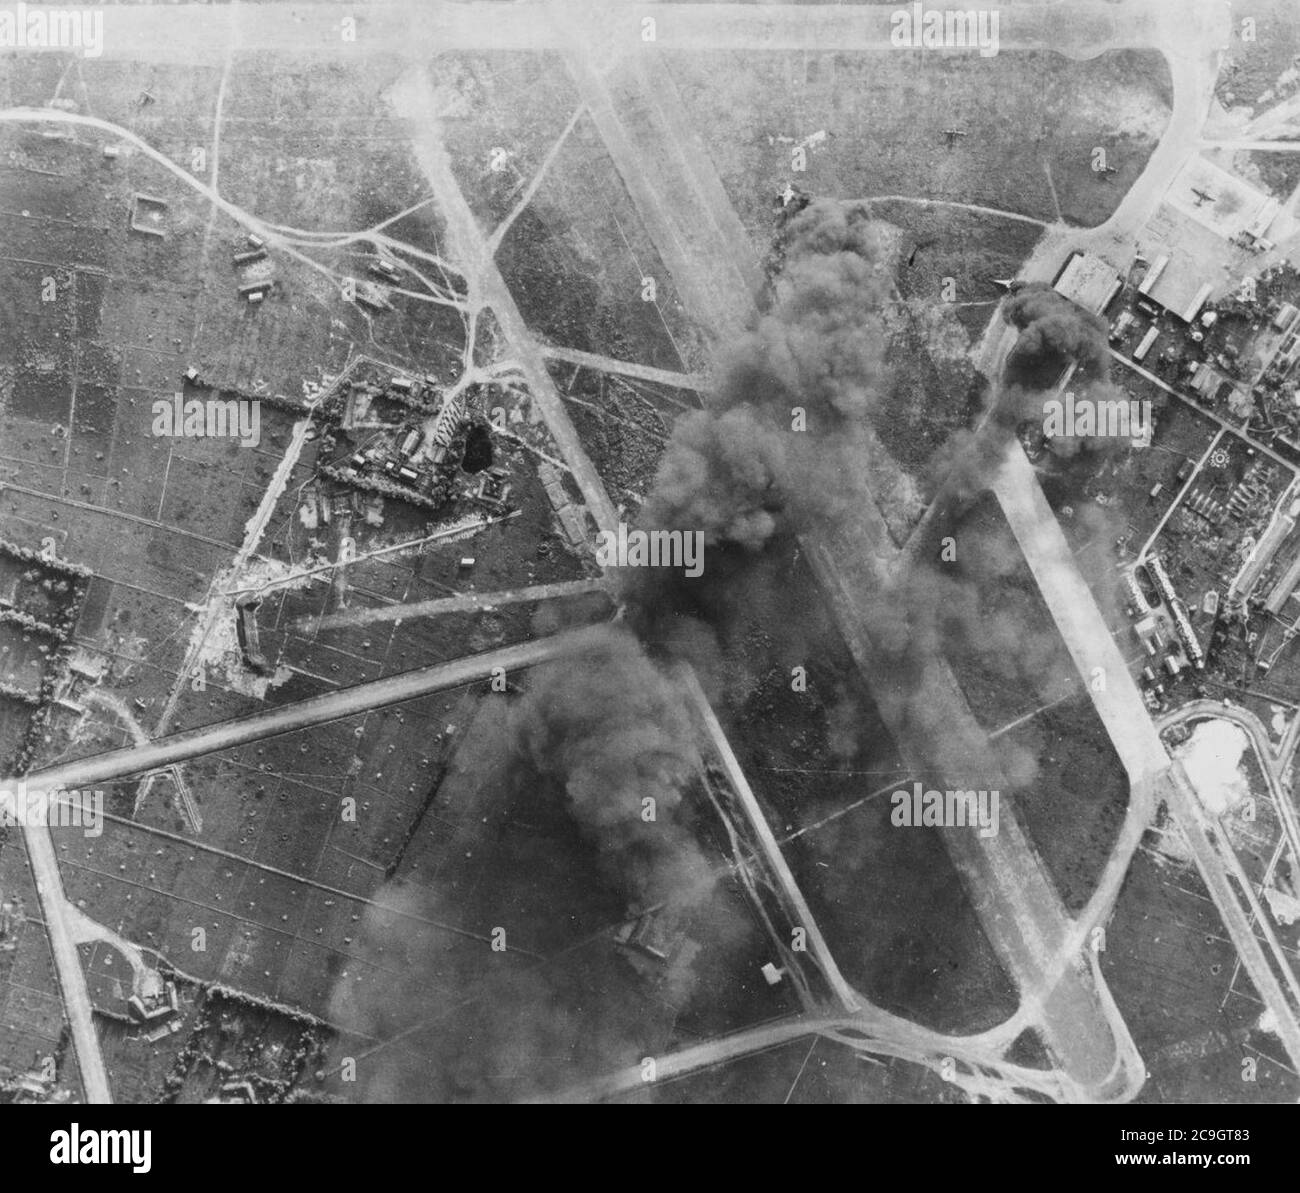 Japanische Flugzeuge und Anlagen brennen auf dem Flugplatz Tan Son Nhut bei Saigon während der Streiks von USS WASP Aircraft, 12. Januar 1945. Stockfoto